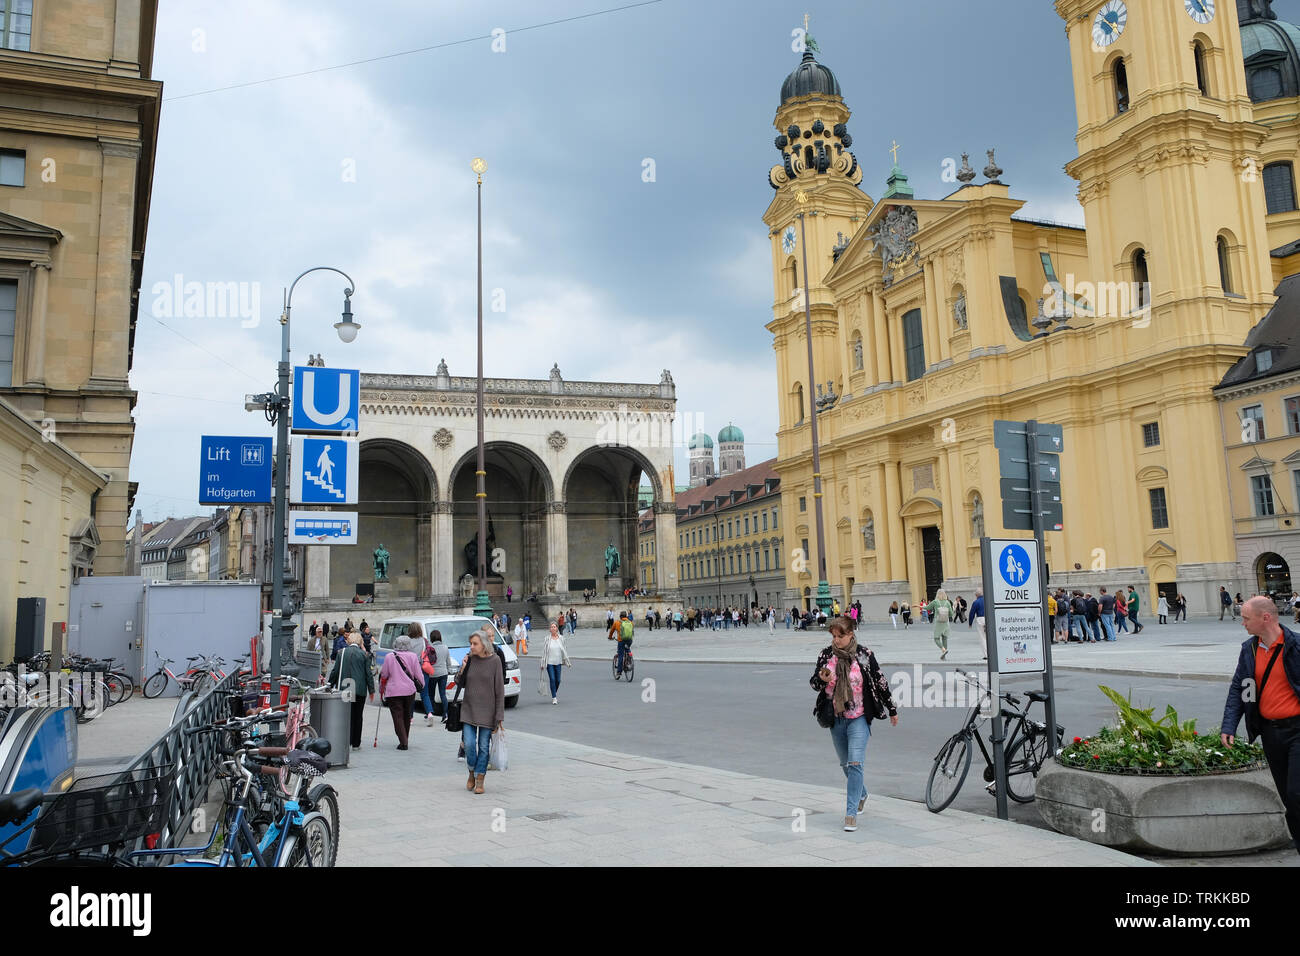 L'Odeonsplatz è una grande piazza nel centro di Monaco di Baviera. Essa è stata la posizione della birra Hall Putsch, un fallito colpo di stato da parte del partito nazista nel 1923 Foto Stock